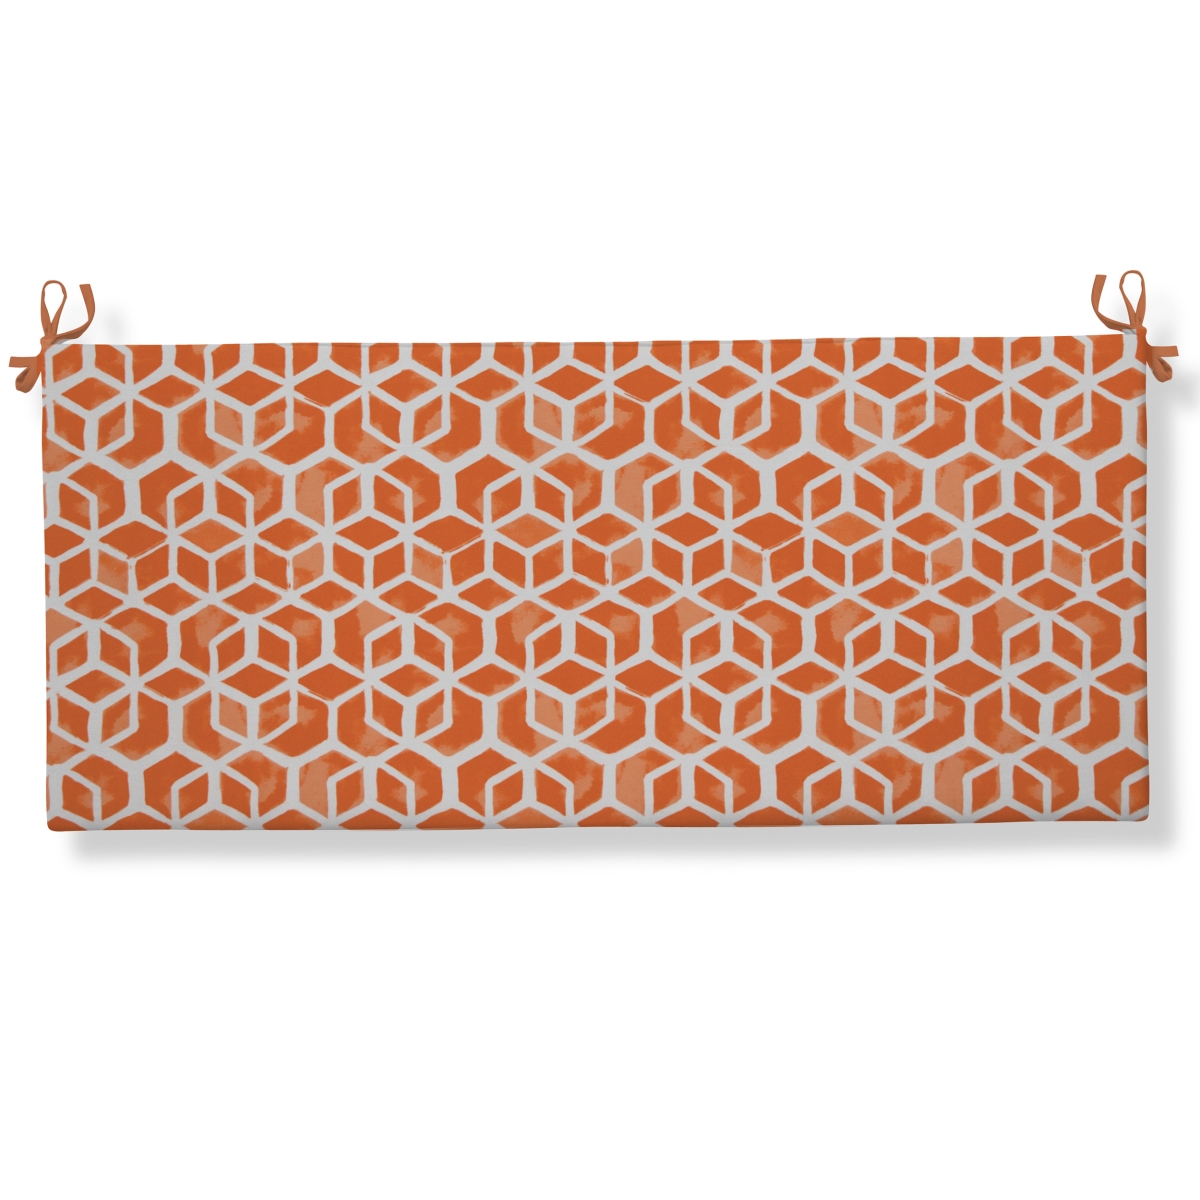 70536 Inbox Indoor & Outdoor Flat Bench & Swing Cushion With Ties, Orange